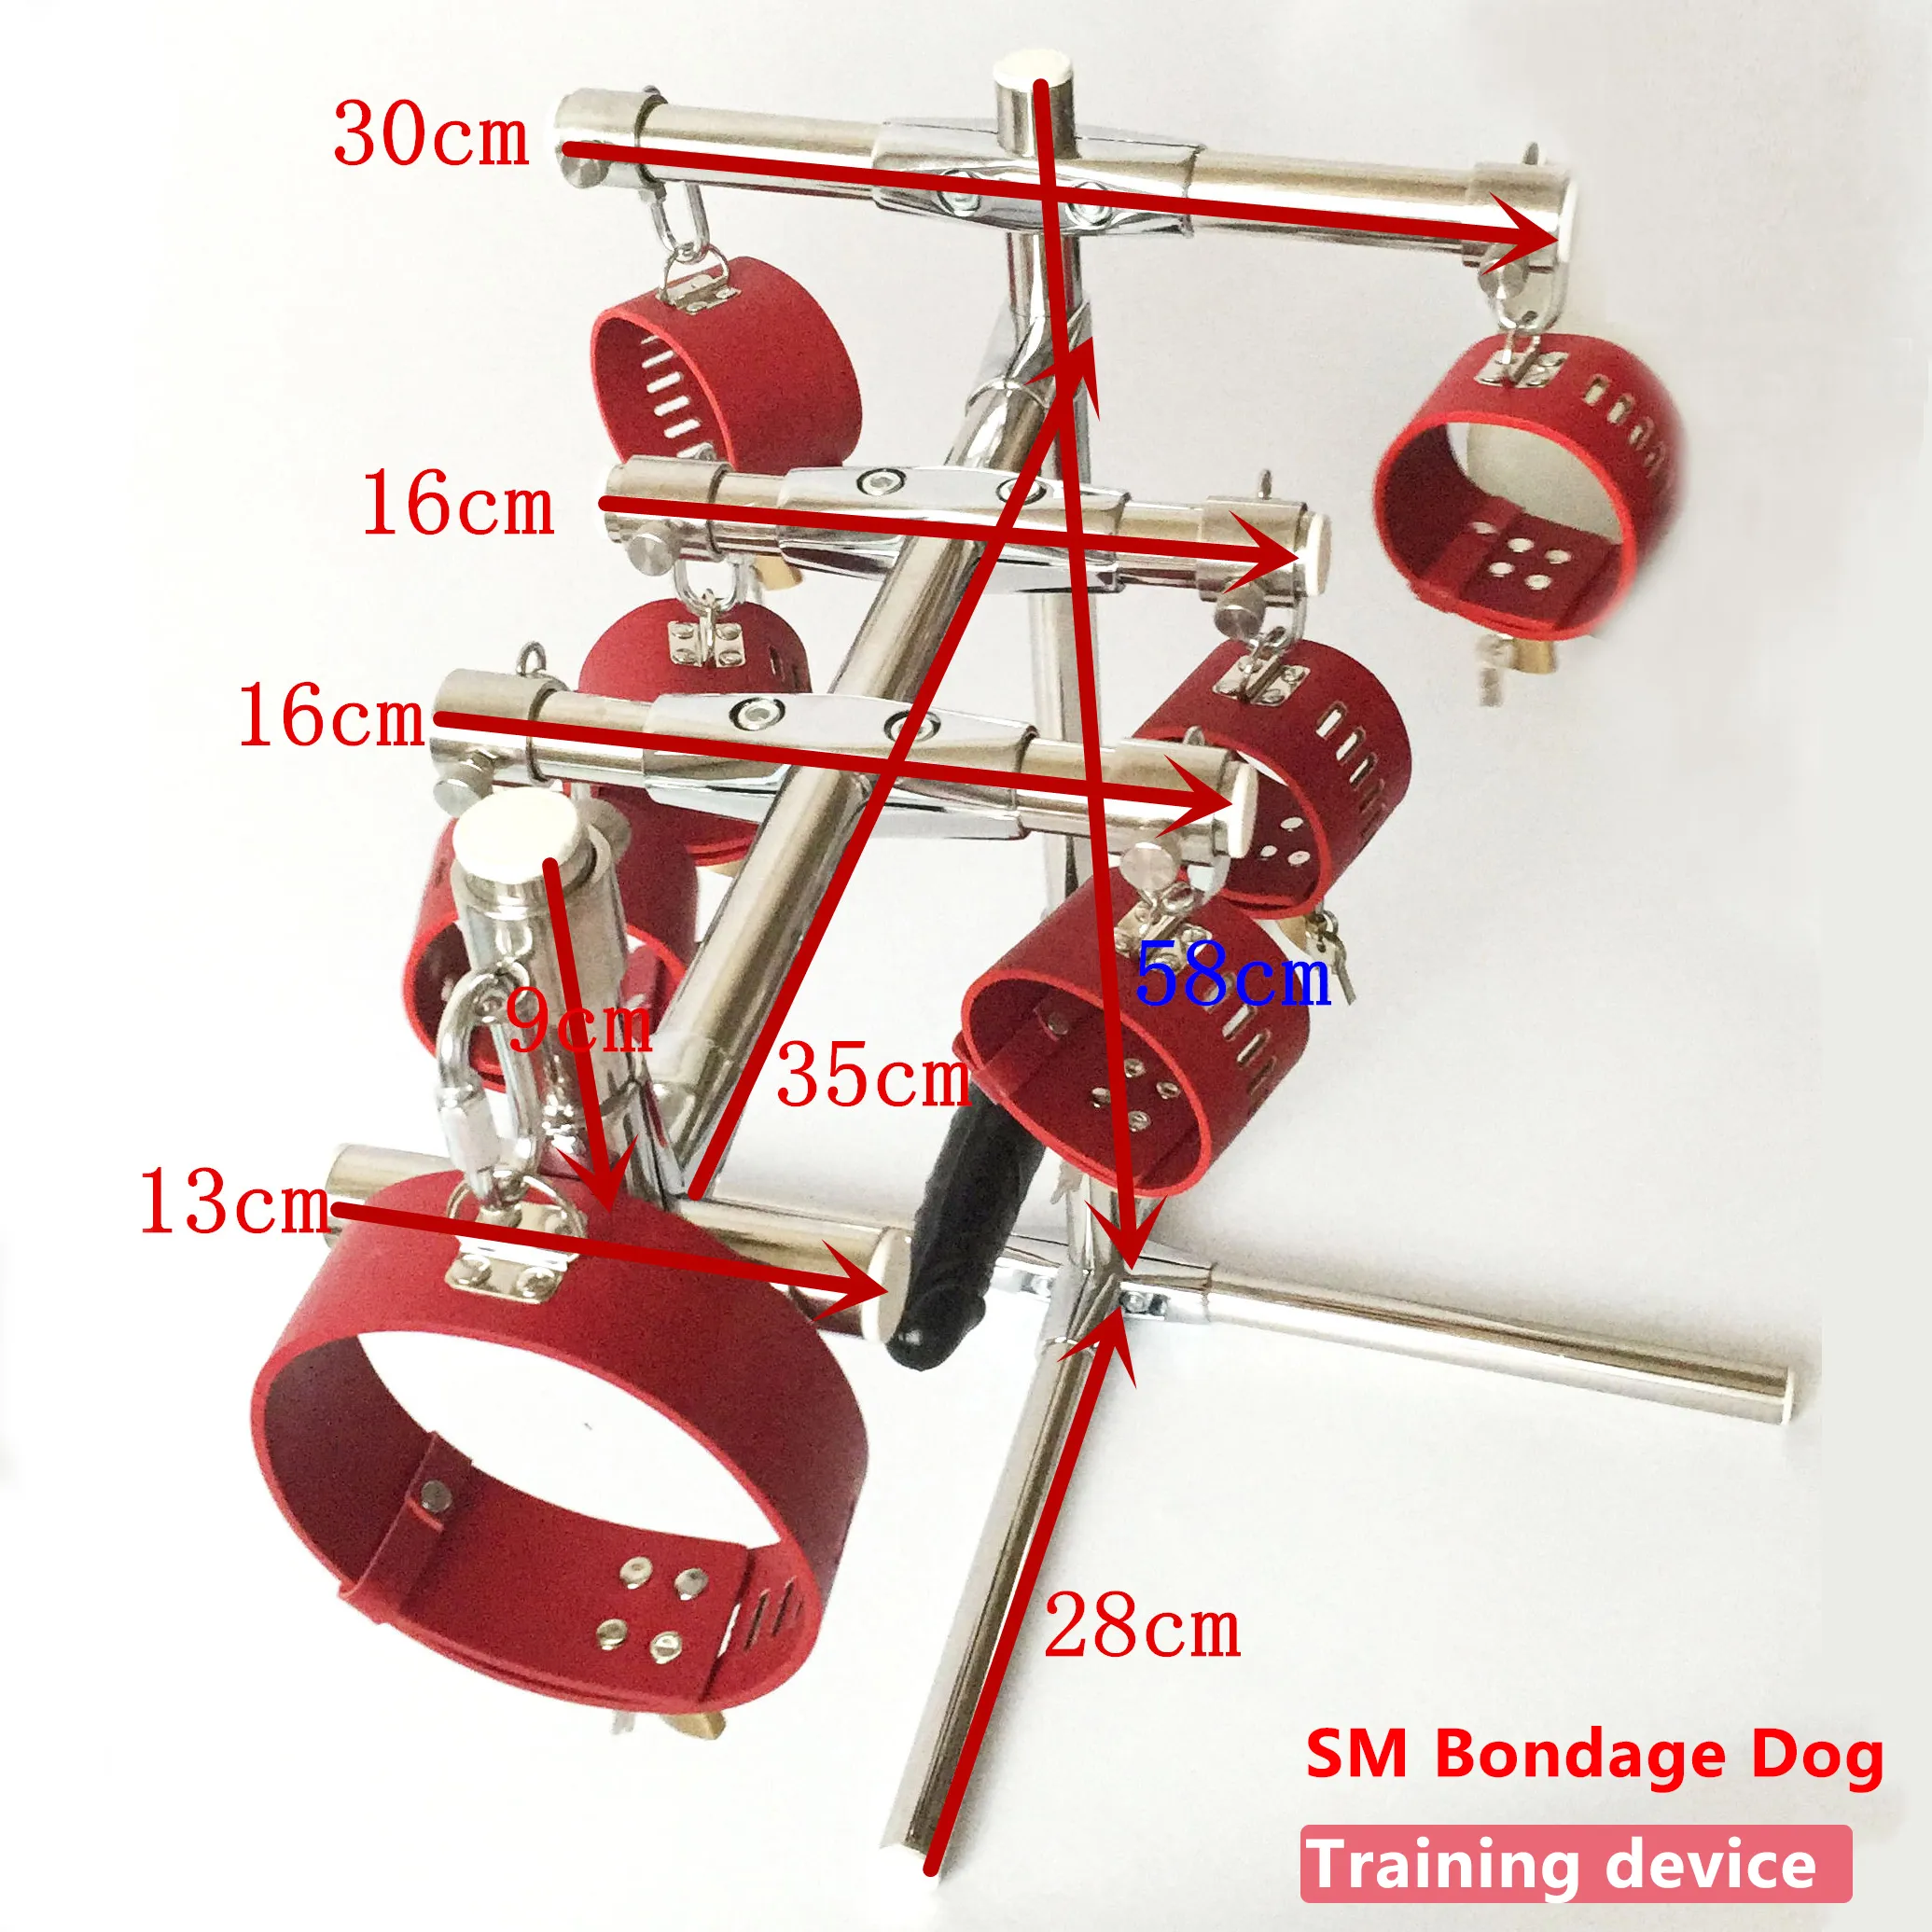 Tile en acier inoxydable Portable SM Bondage Dog Training Dispositif avec poignets de cheville en cuir collier et ma gode meubles de sexe